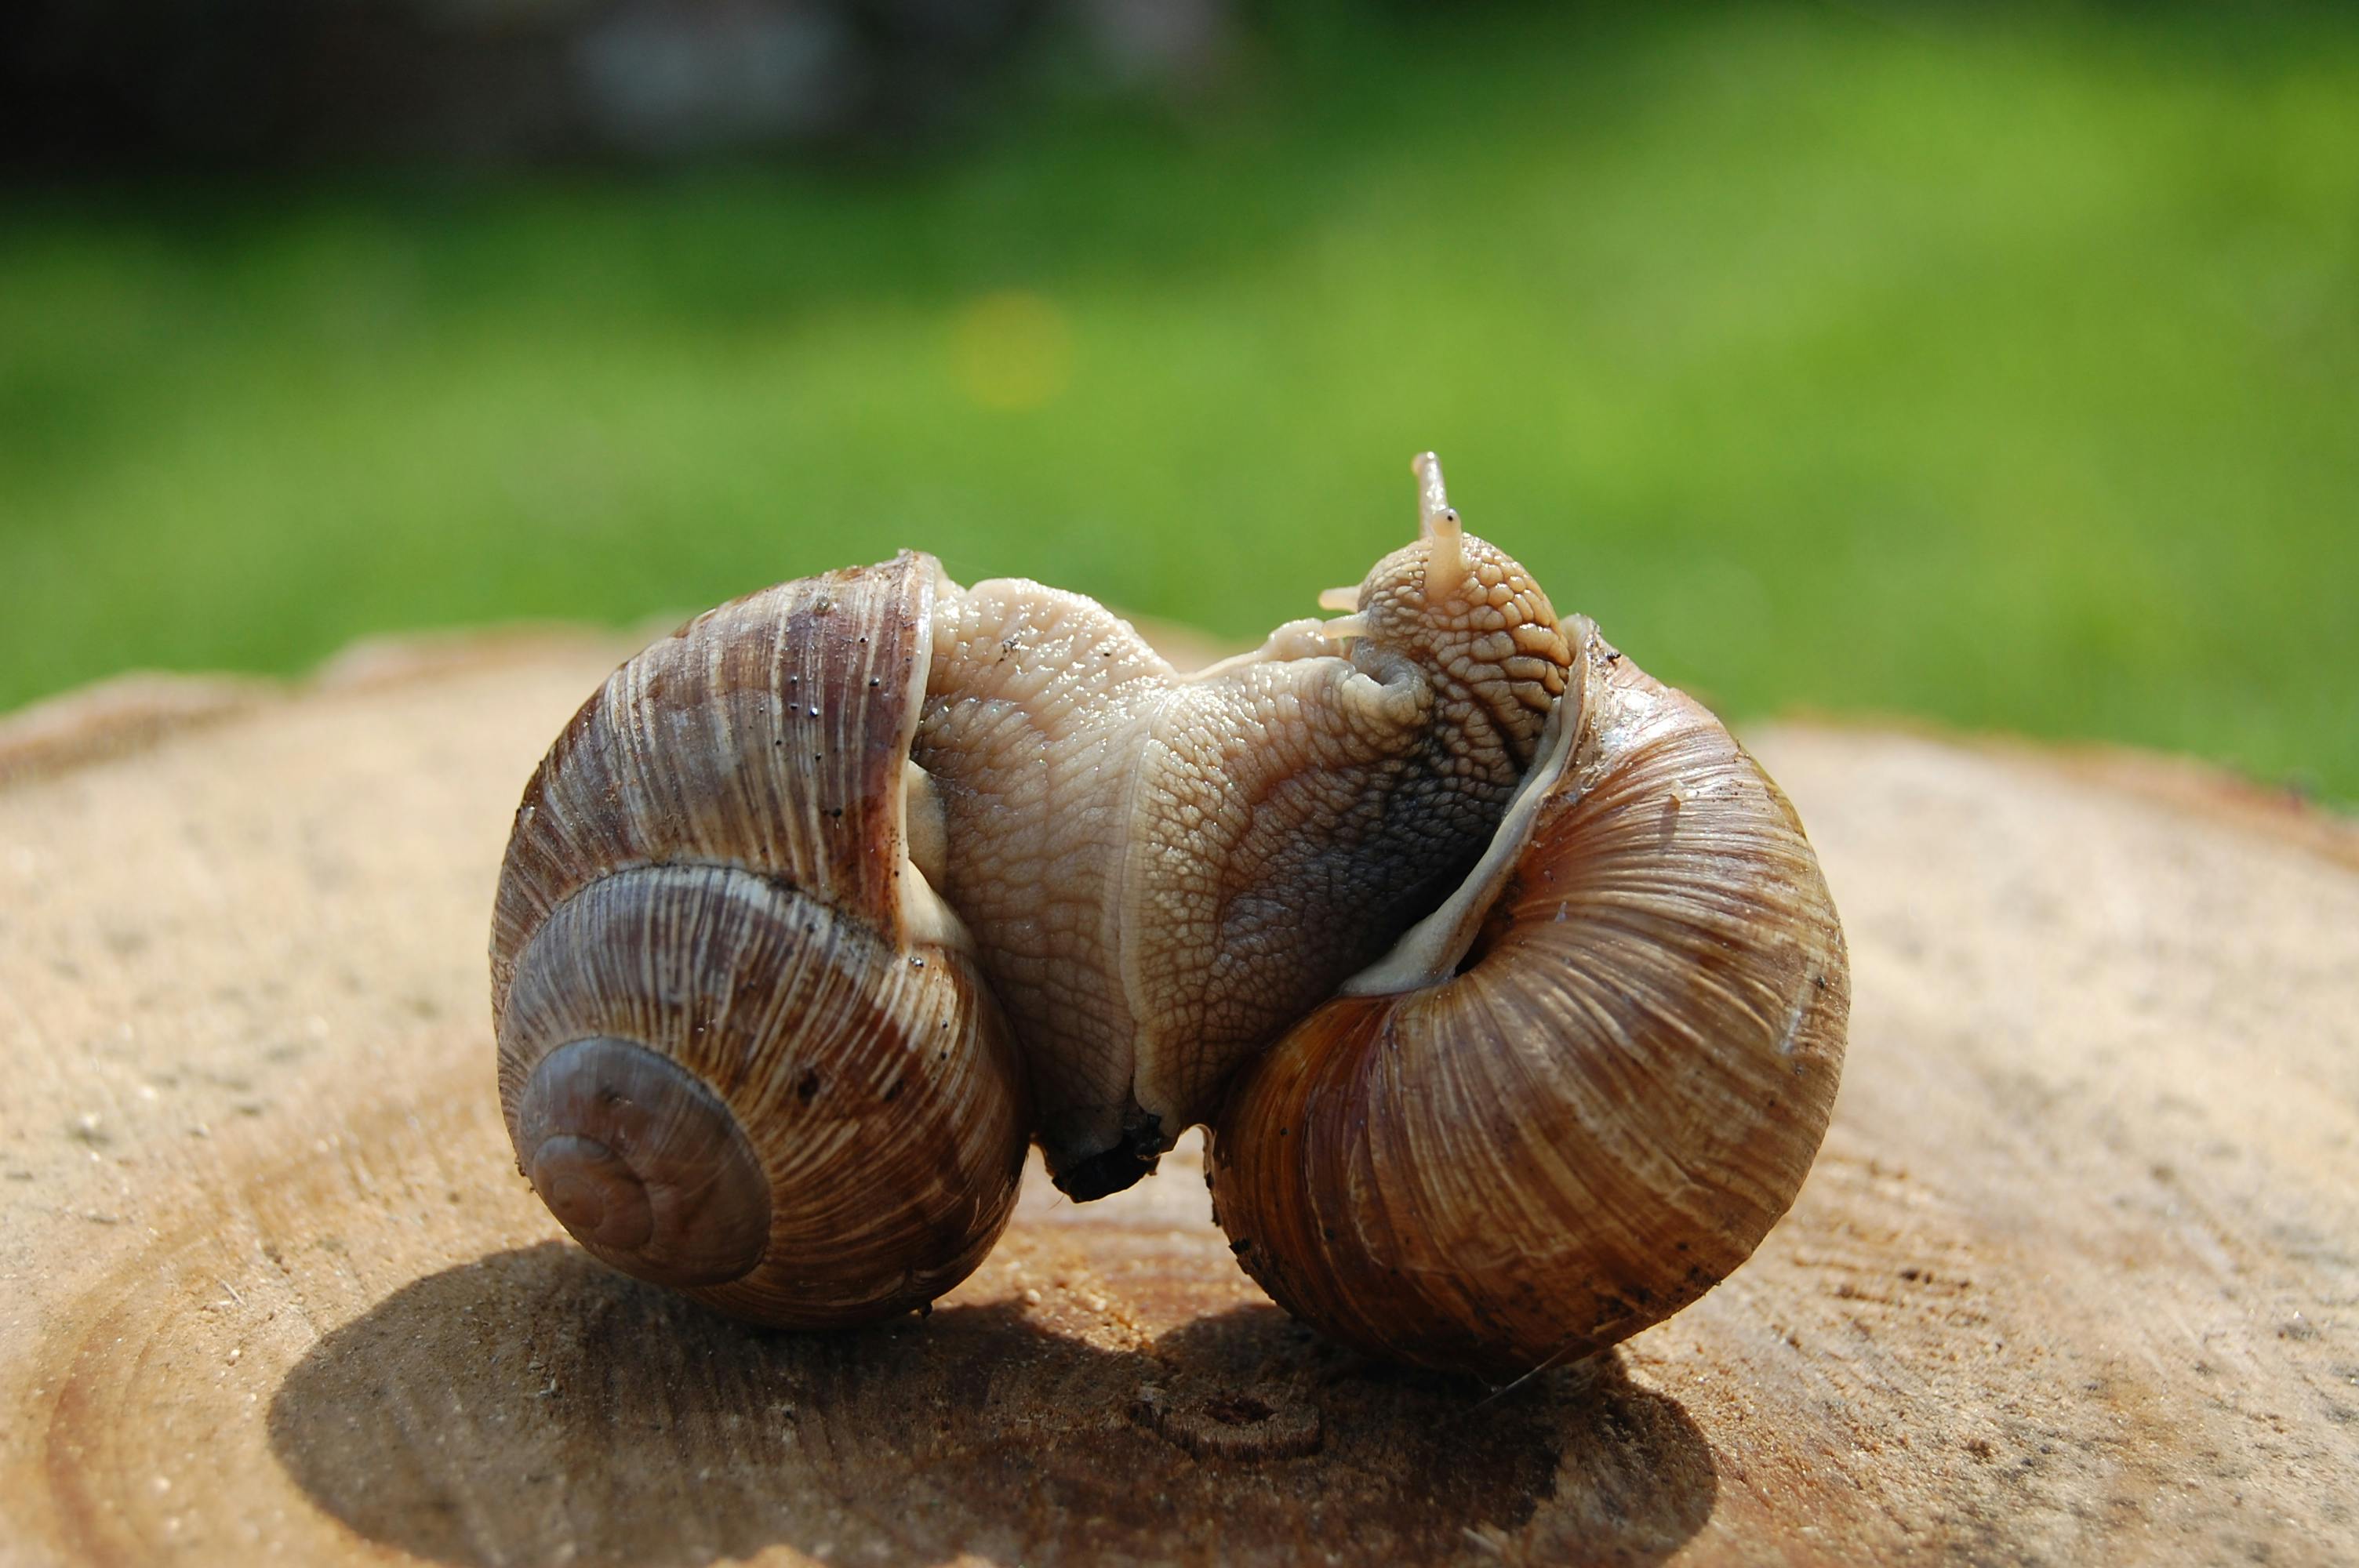 Free stock photo of edible snail, Roman snail, snails